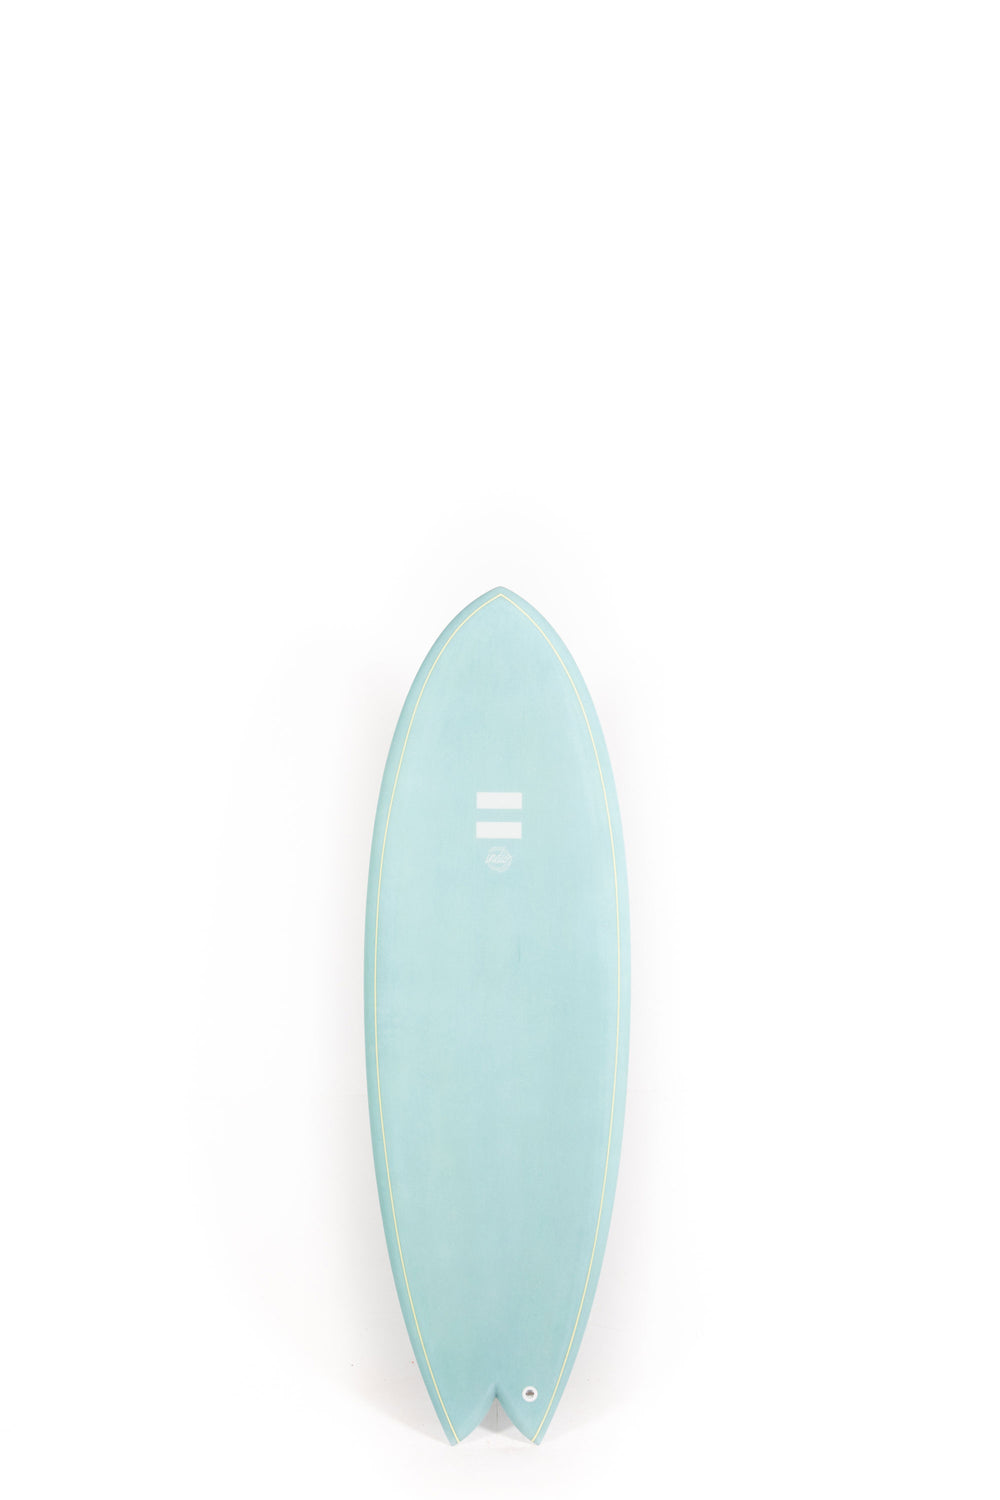 Indio Surfboards - COMBO Ocean - 5'4